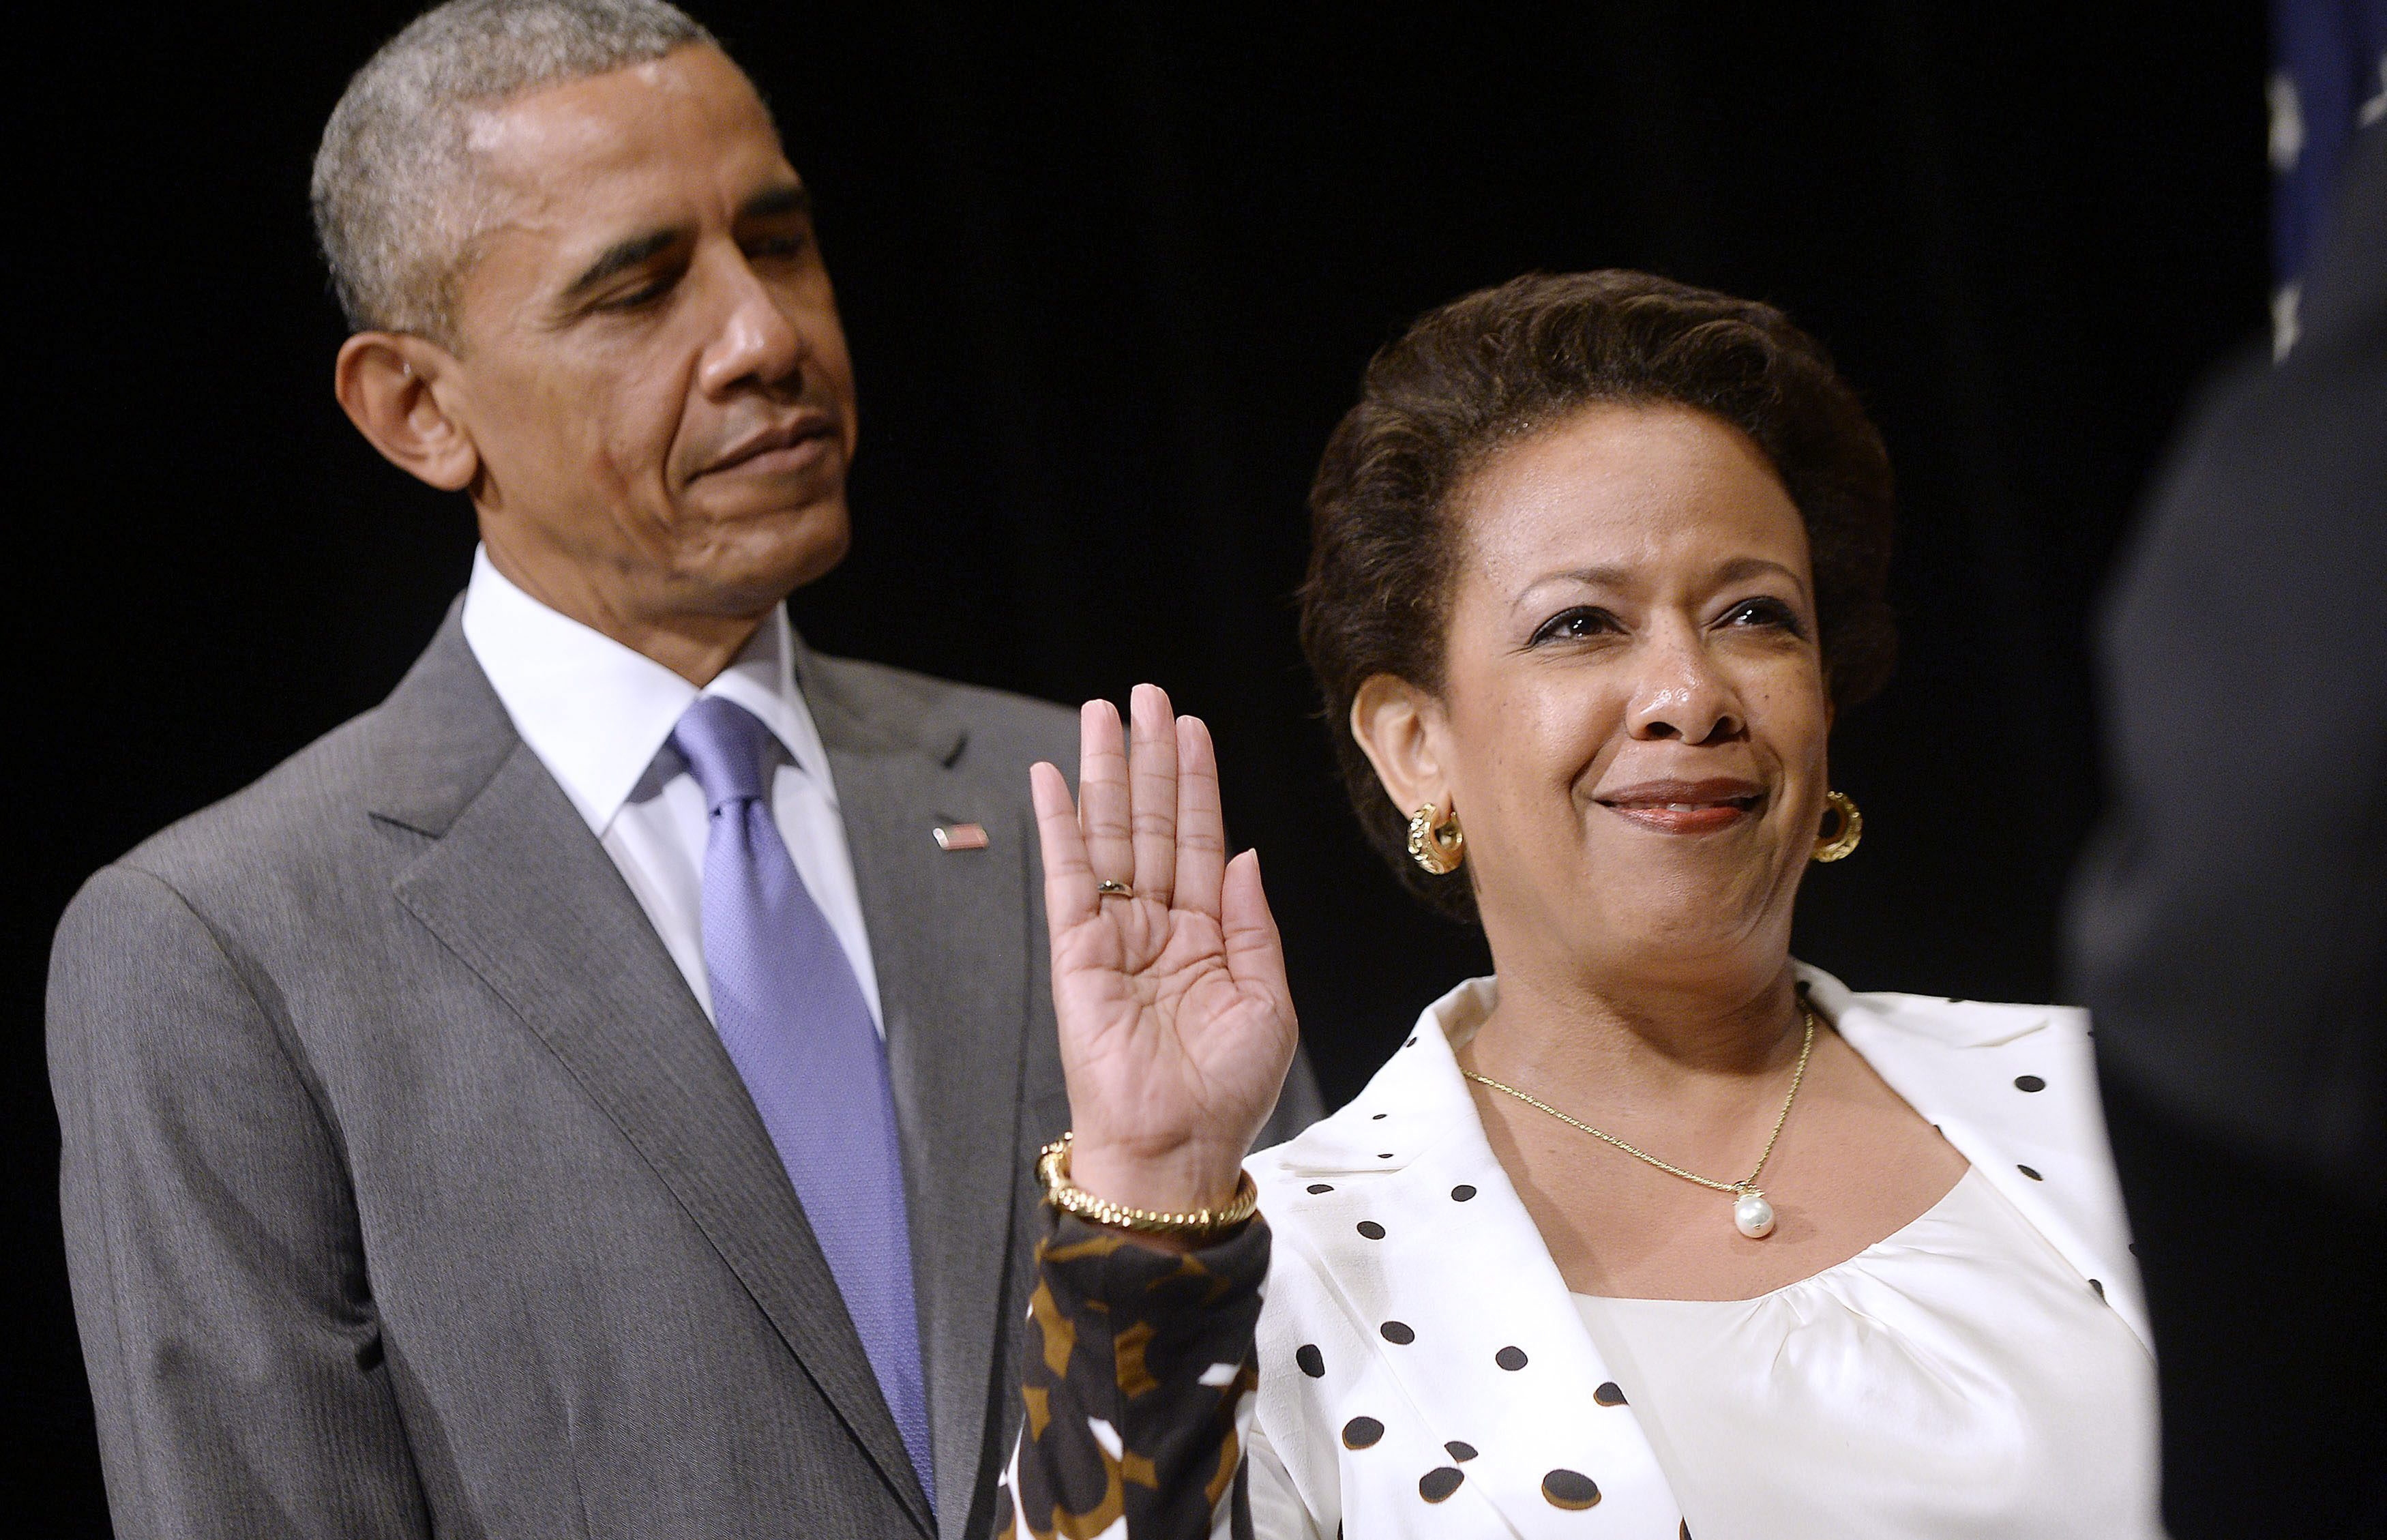 Lynch es "dura" pero "justa": Obama